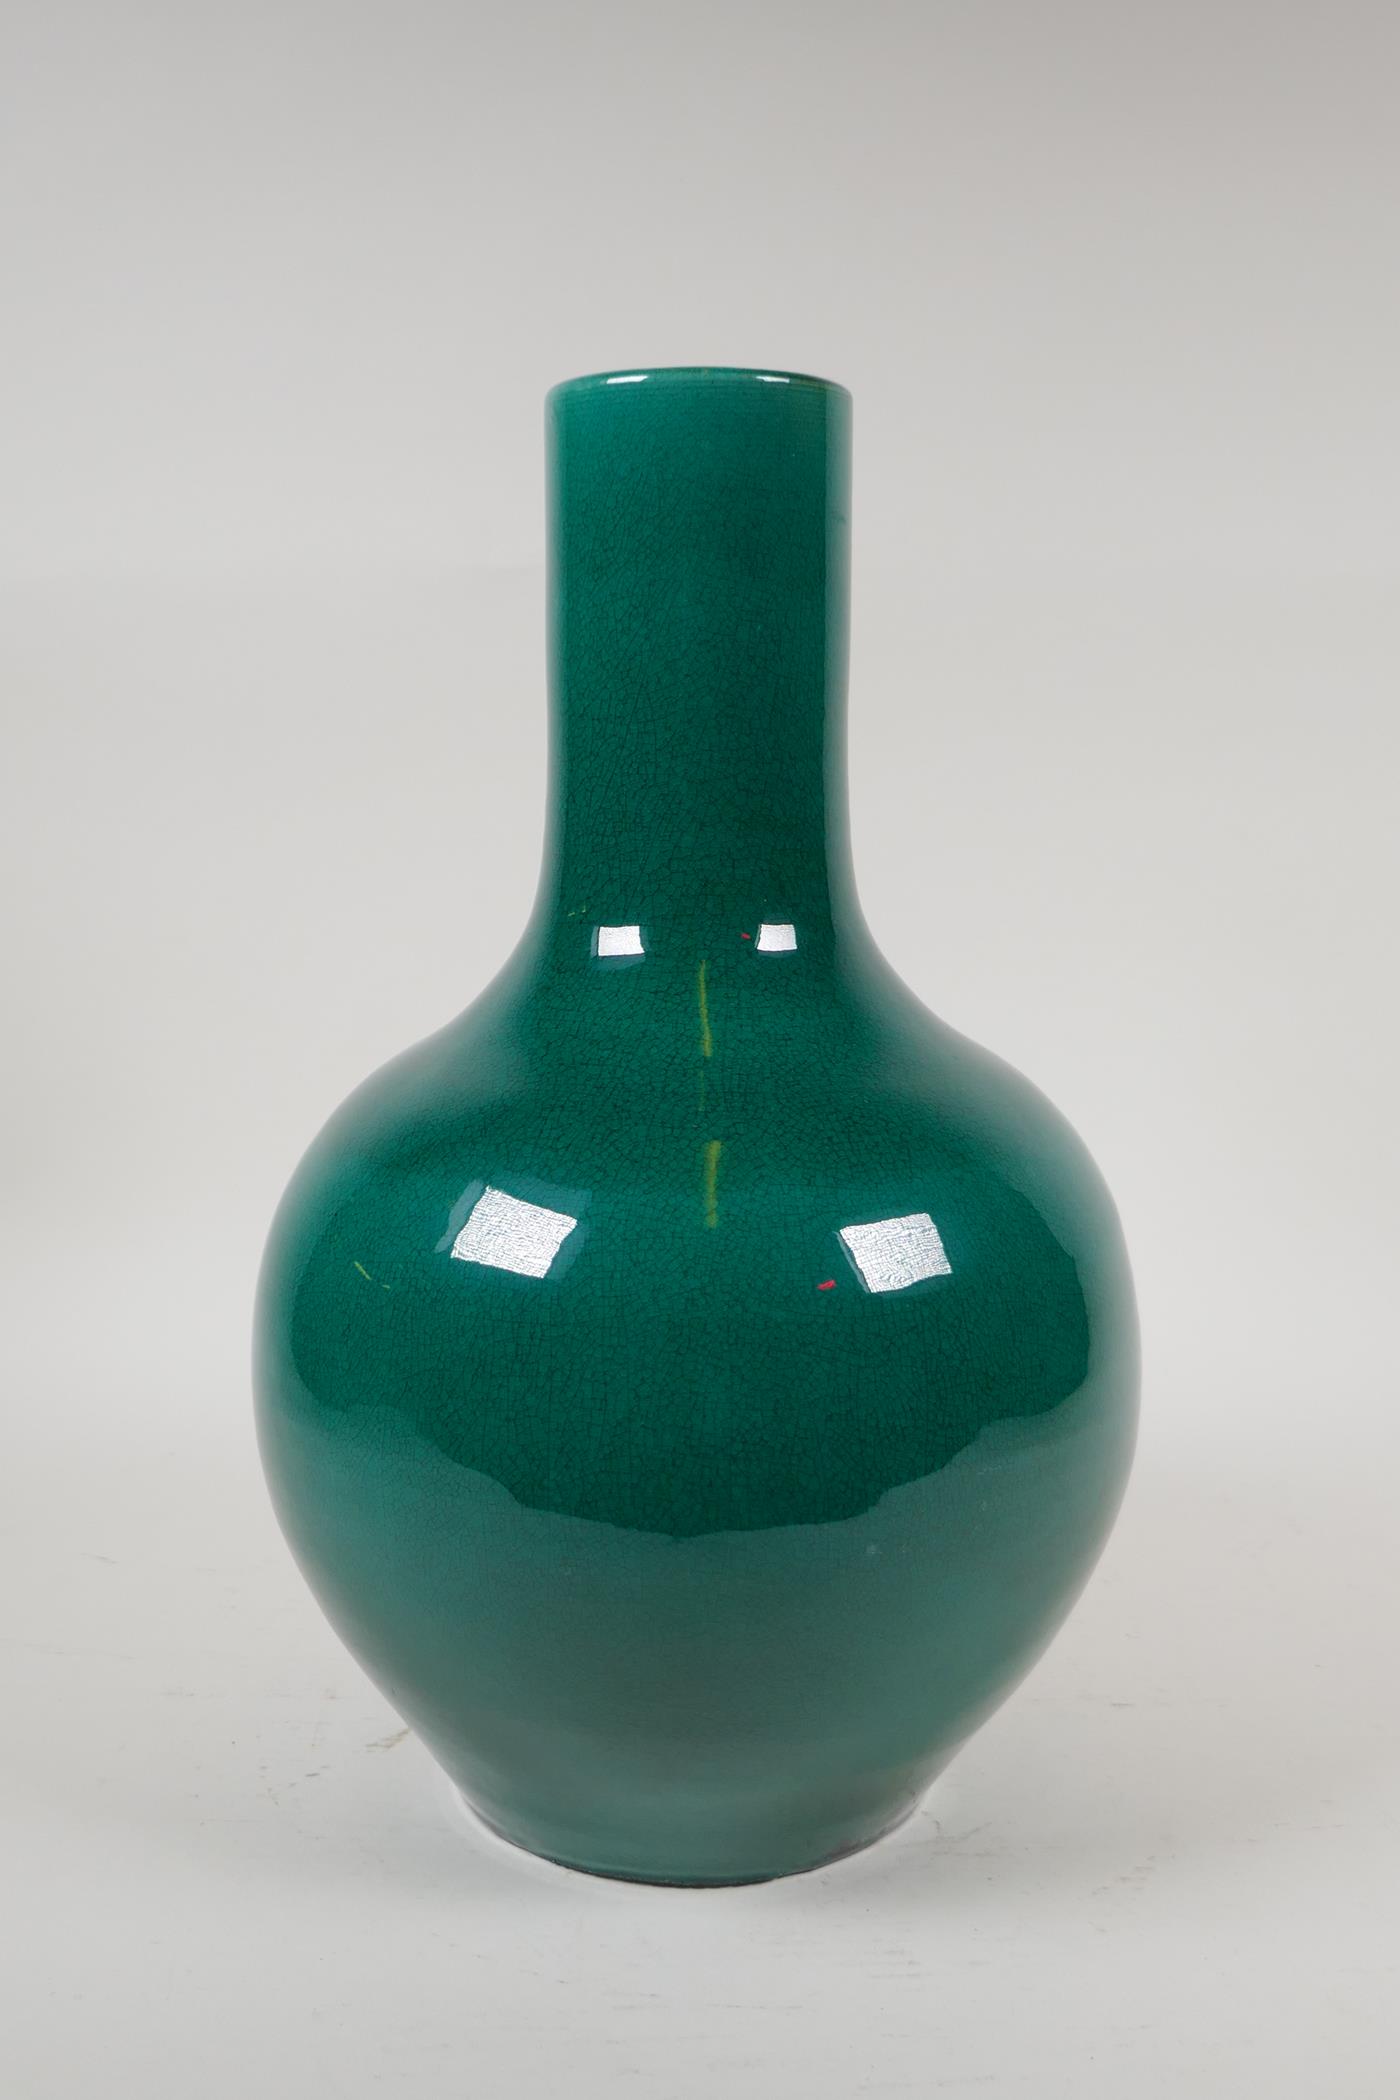 A Chinese emerald green crackle glazed porcelain bottle vase, 13" high - Image 6 of 8